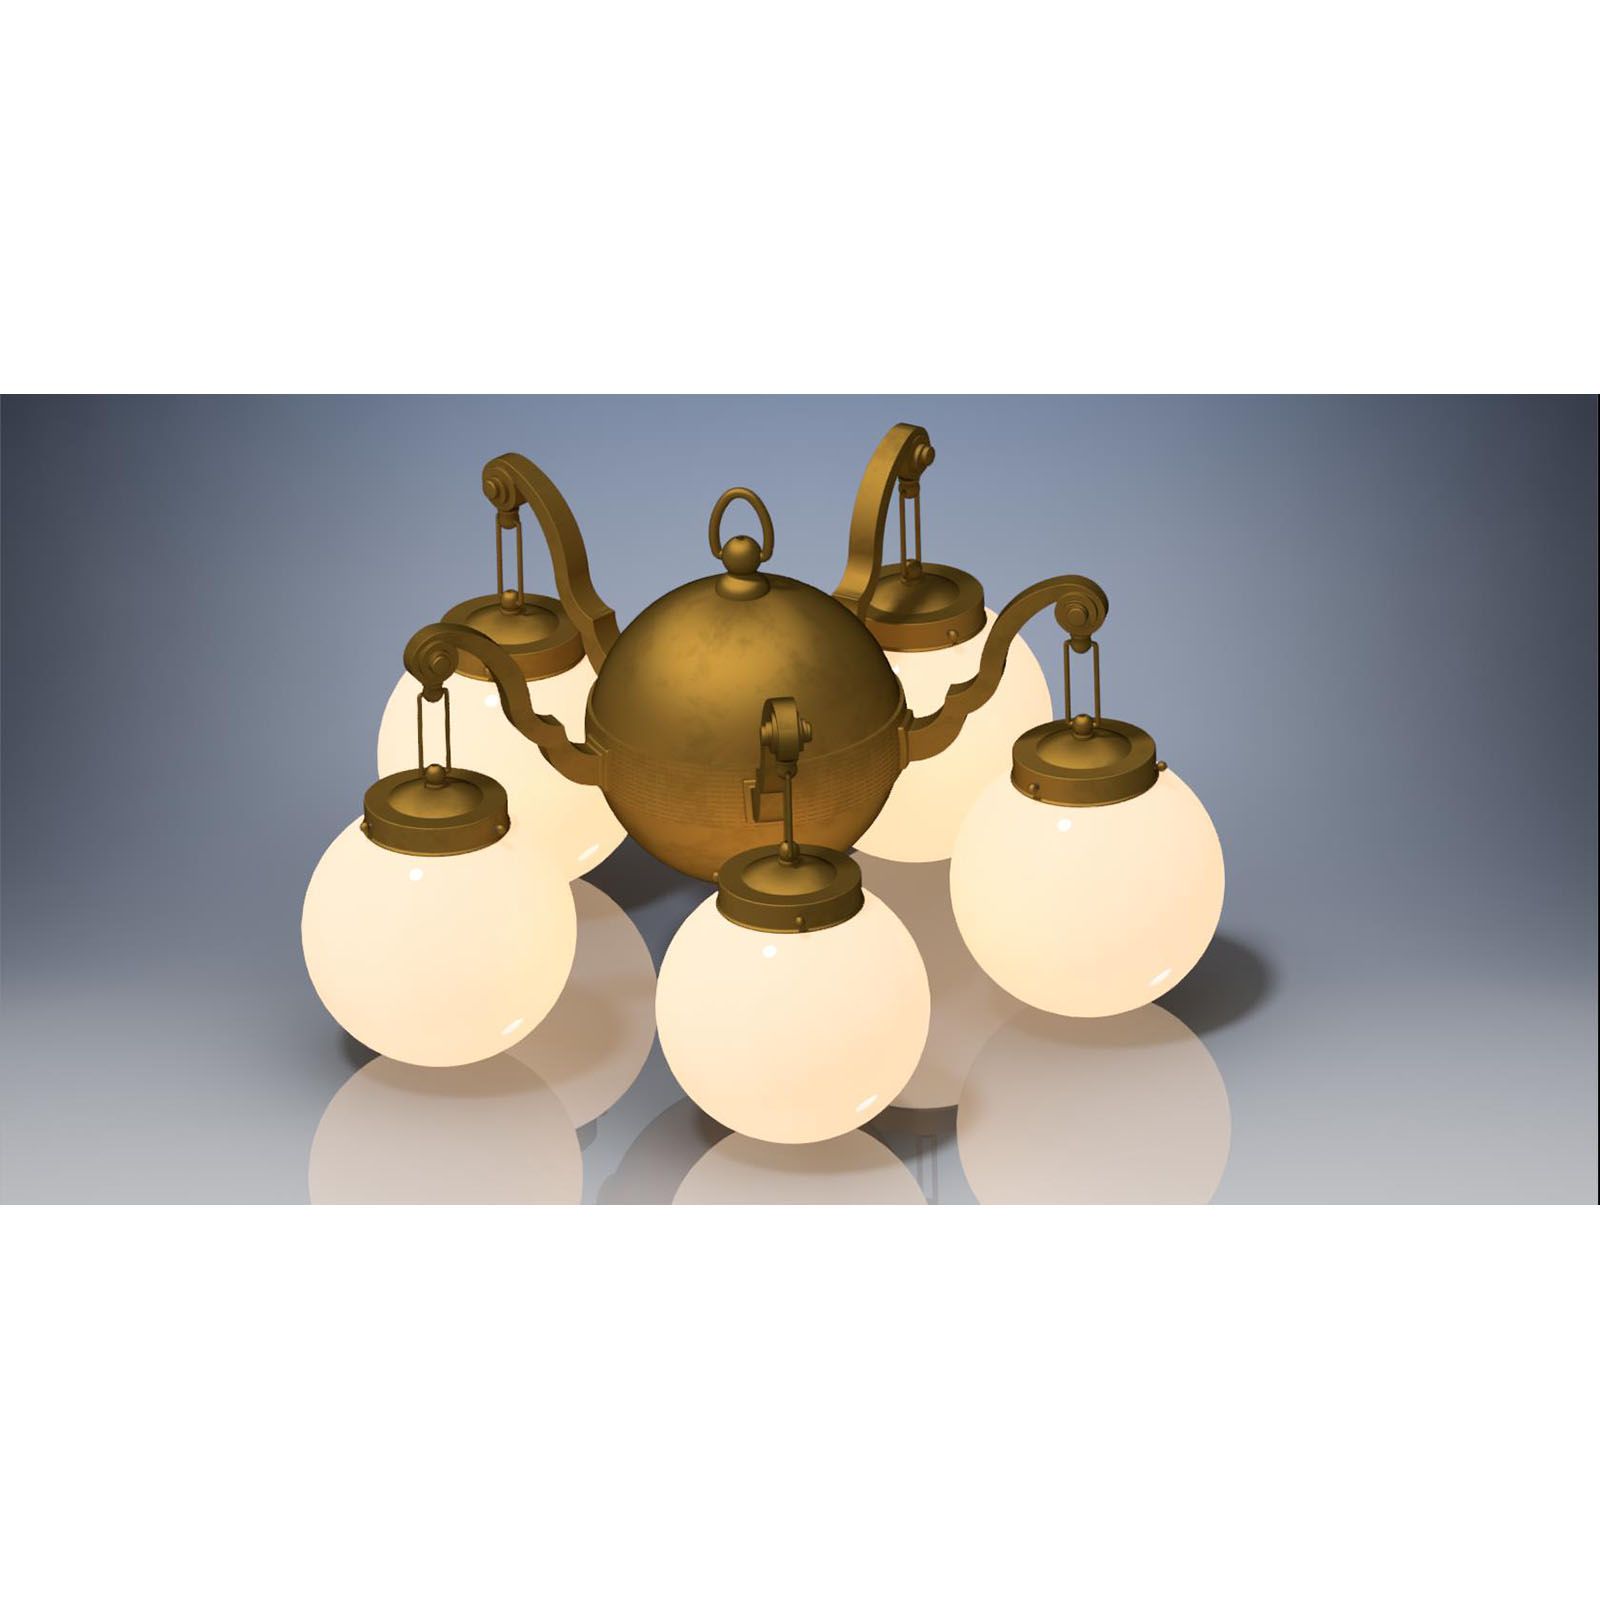 WOKA LAMPS VIENNA - OrderNr.: 21807|Baroque-Style-Chandelier - Design: Austrian Mastercraft